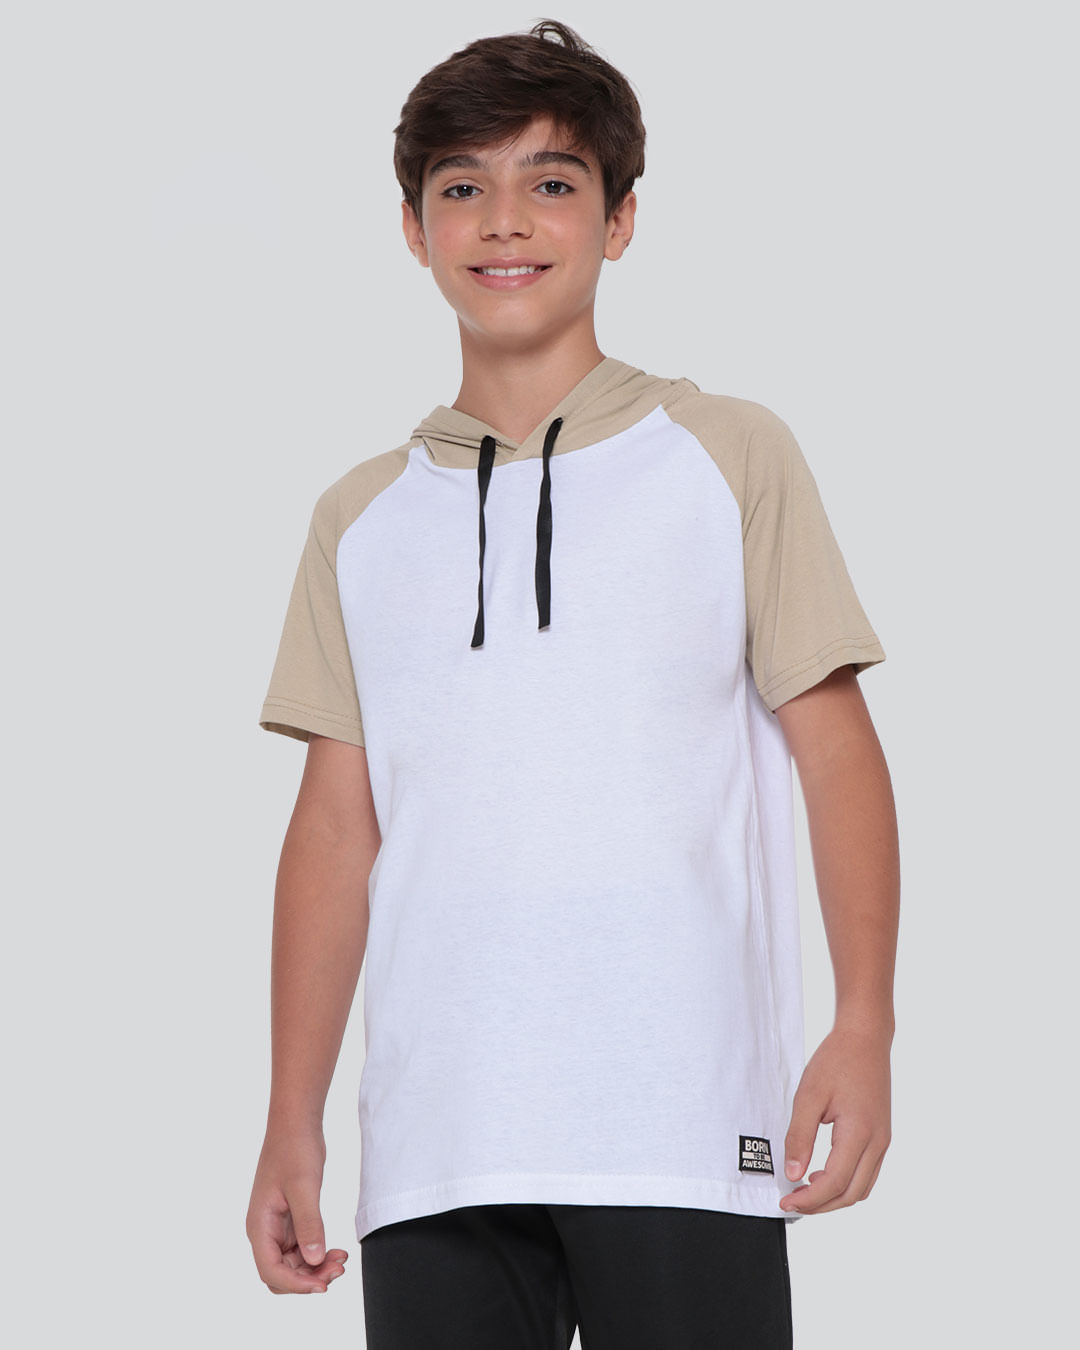 Camiseta Juvenil Capuz Recorte Branca